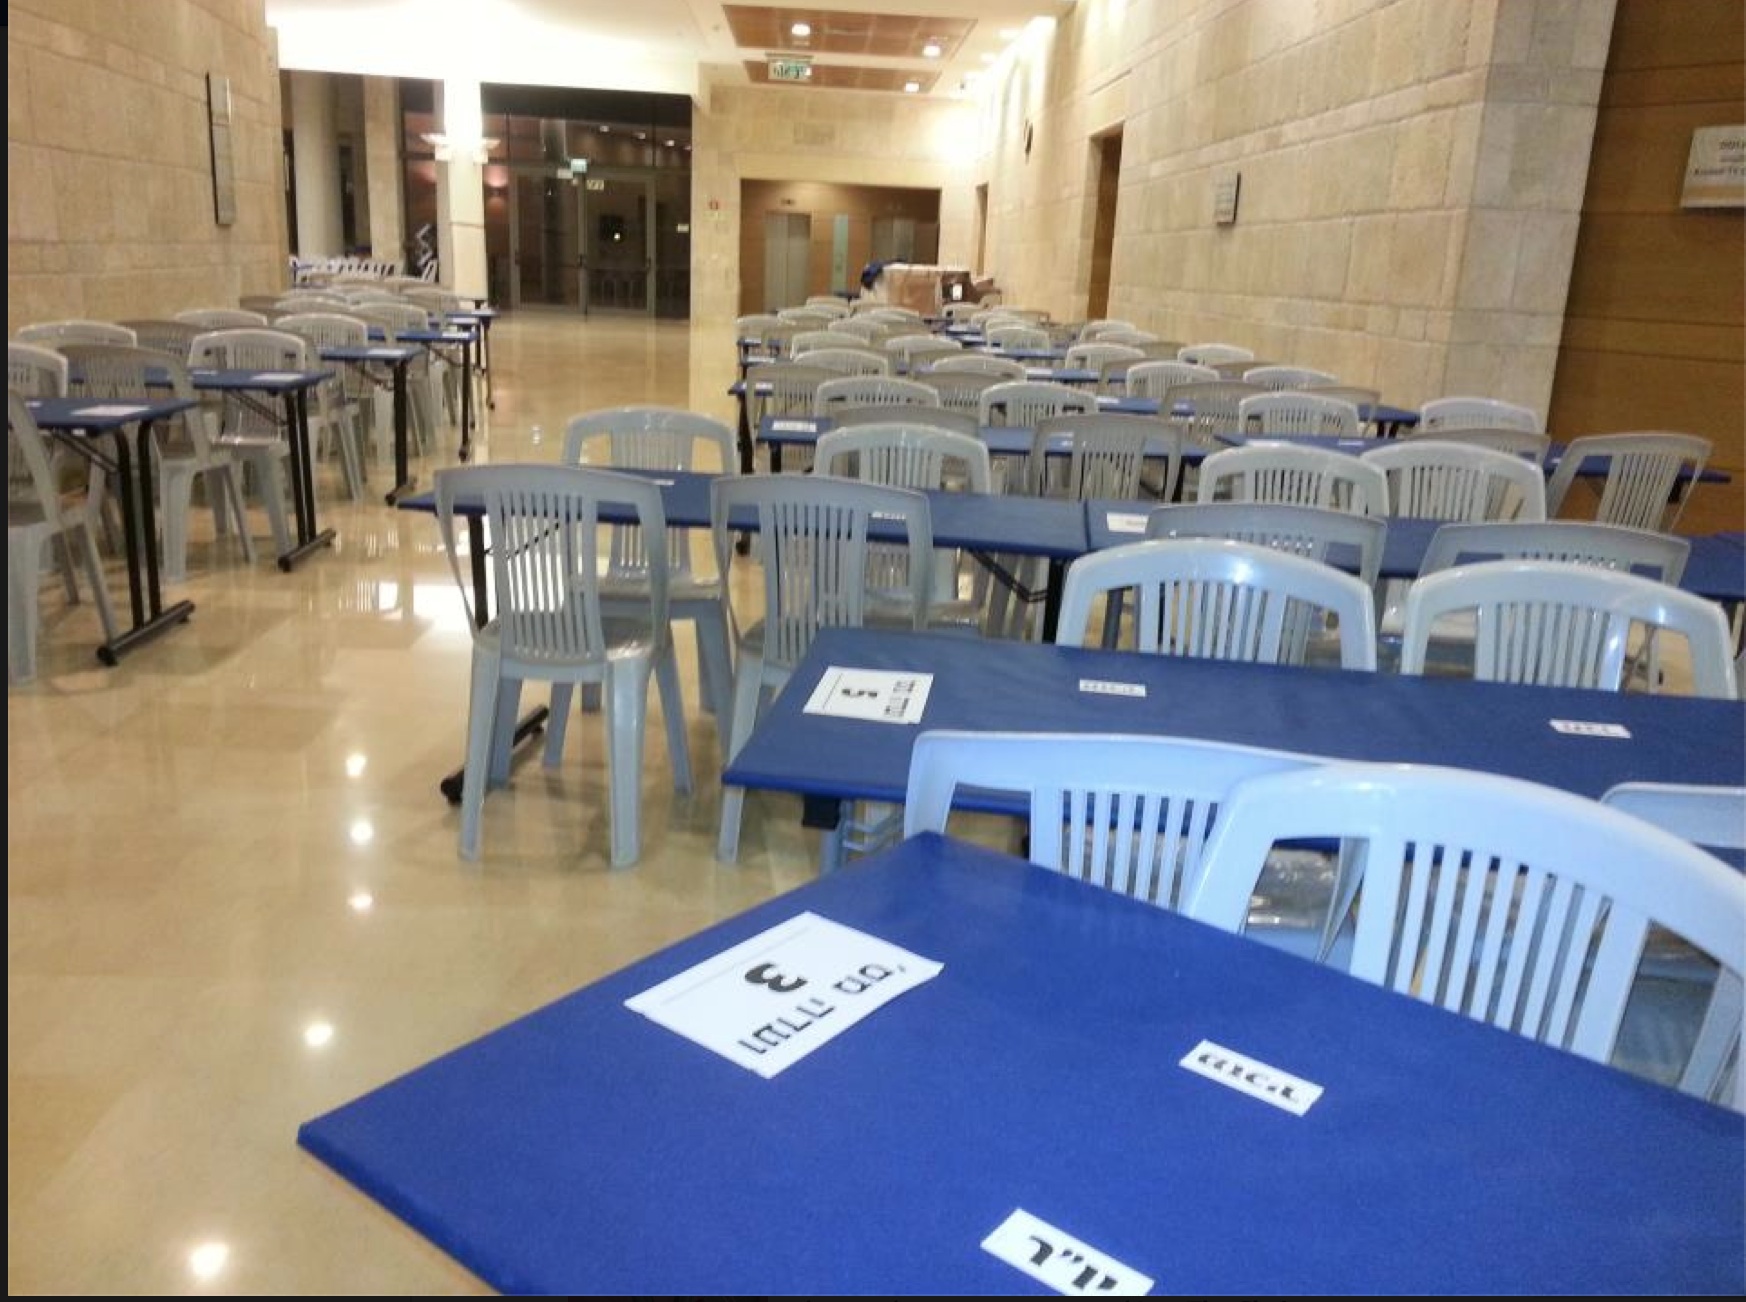 ועדת הבחירות (במסדרונות הכנסת) נערכת ליום הבוחר/ת, צולם באדיבות ראשת הפלוג בכנסת ישראל